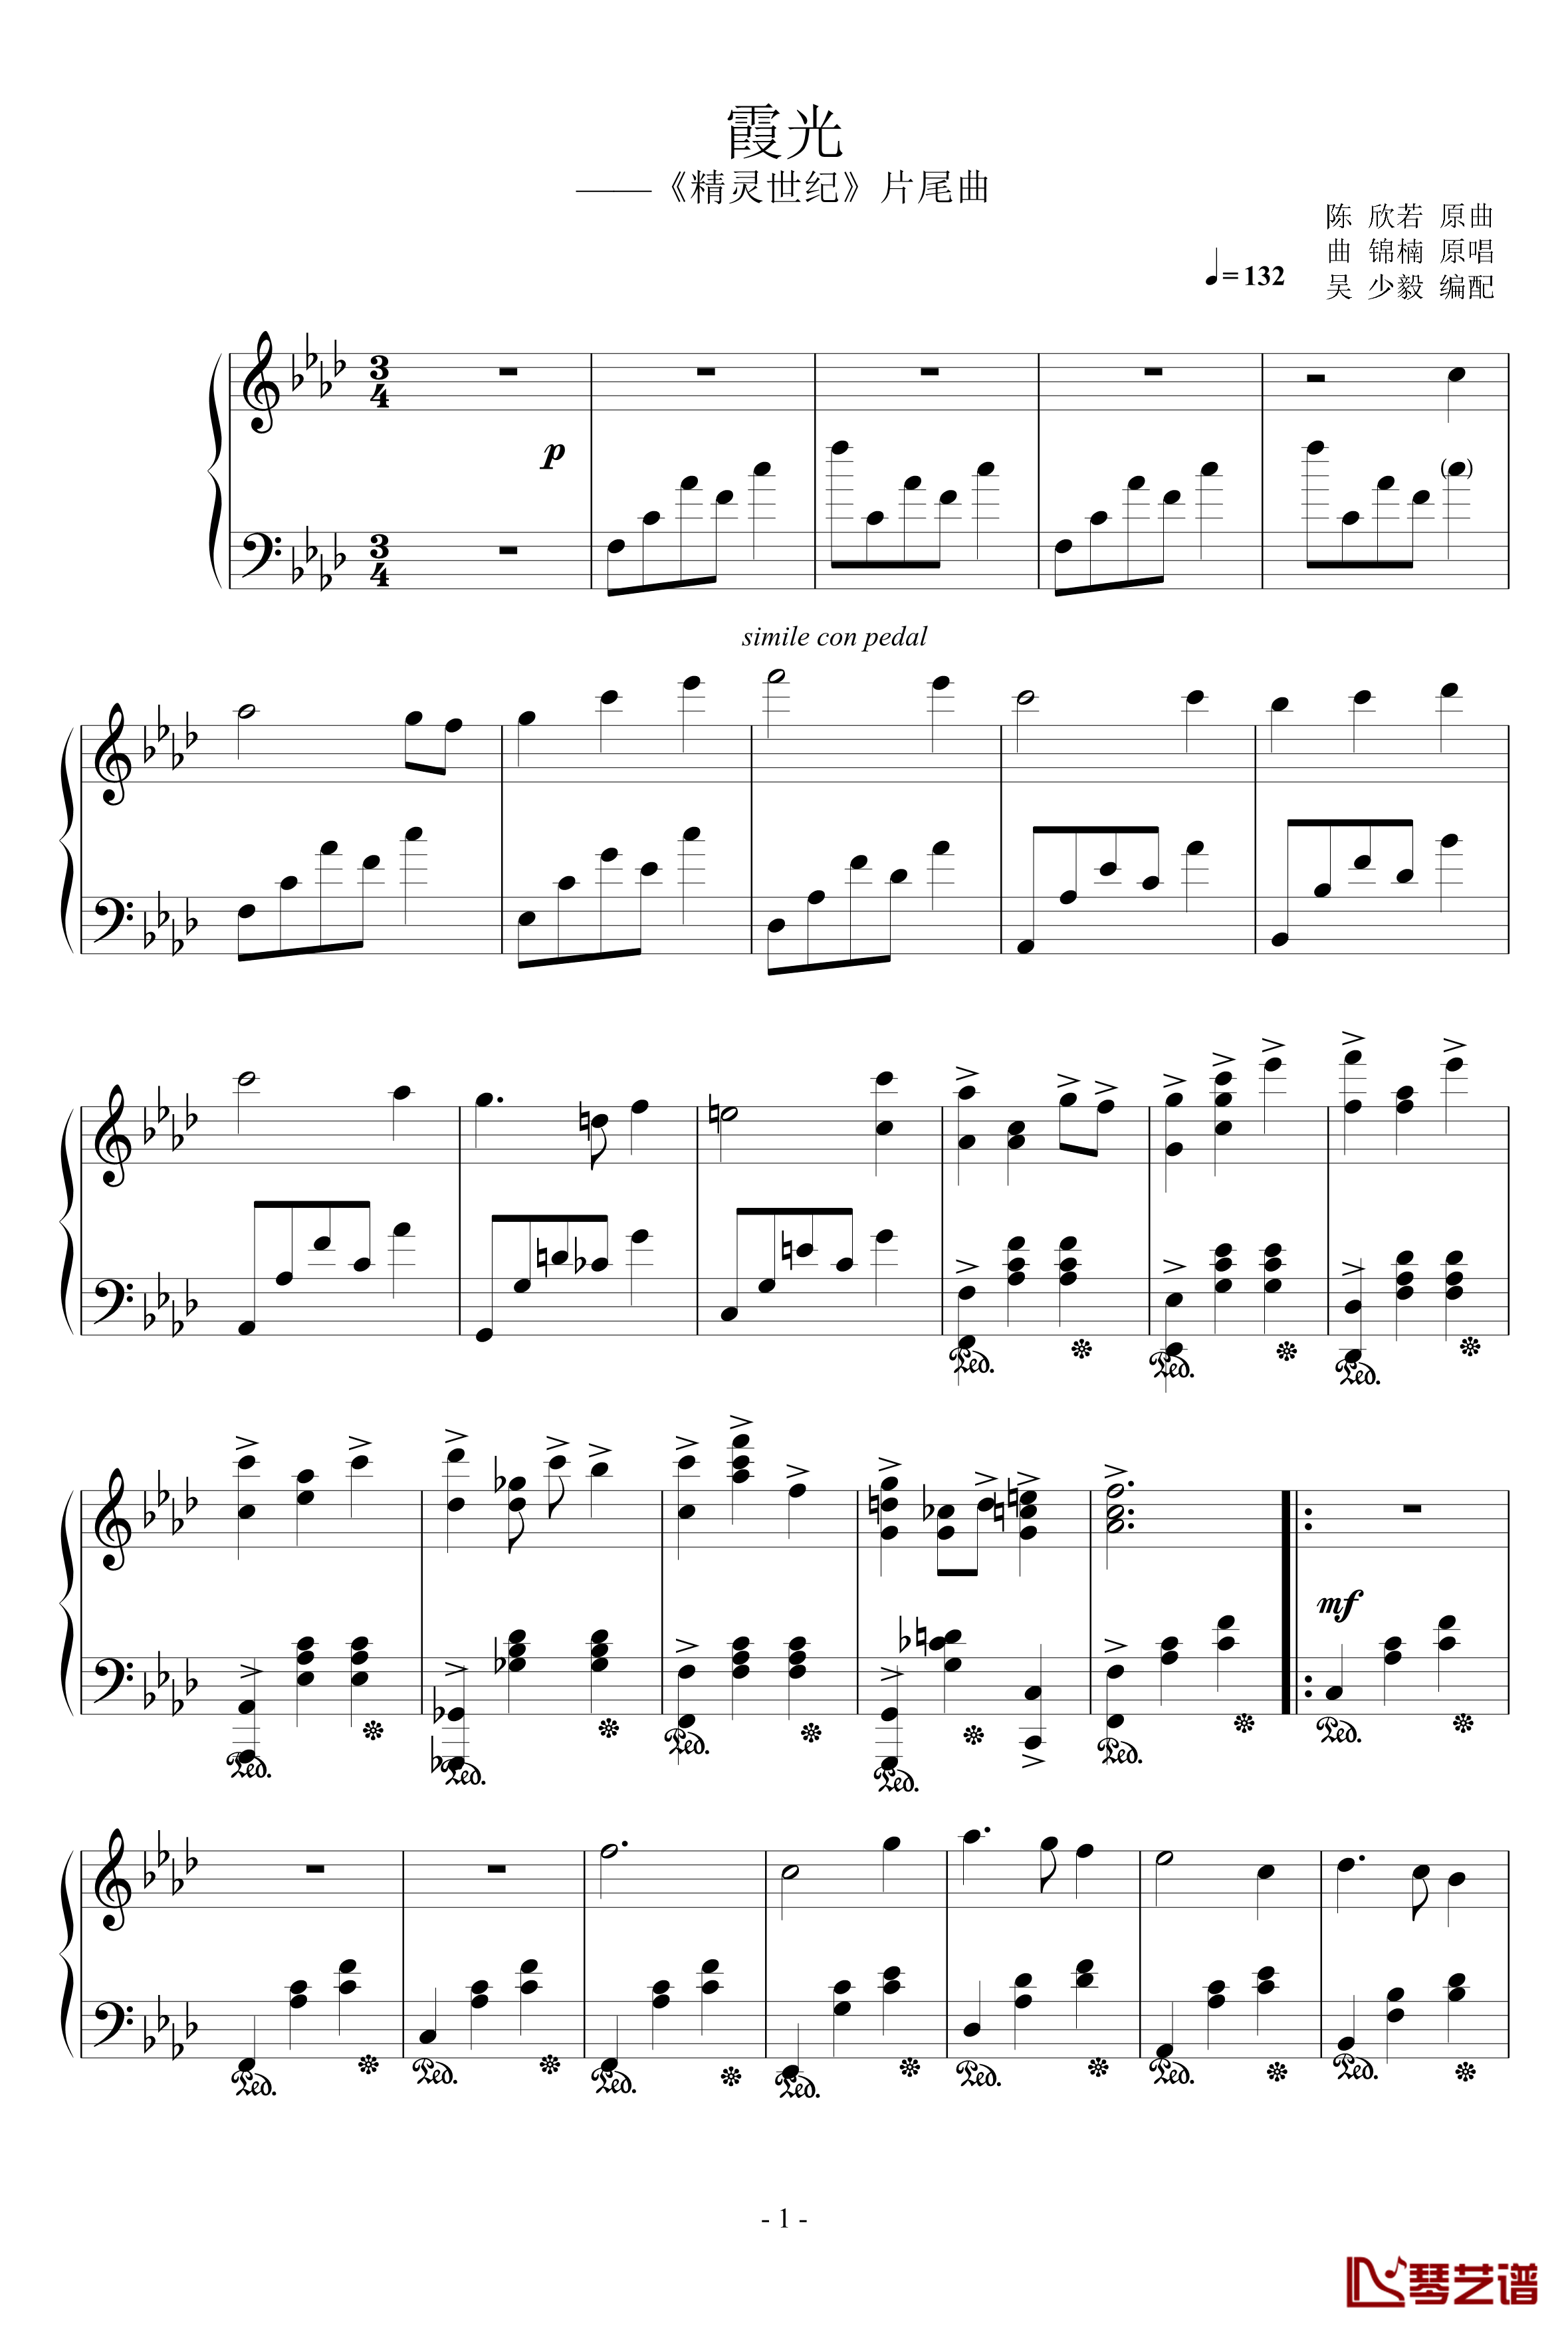 霞光钢琴谱-融合版-曲锦楠1